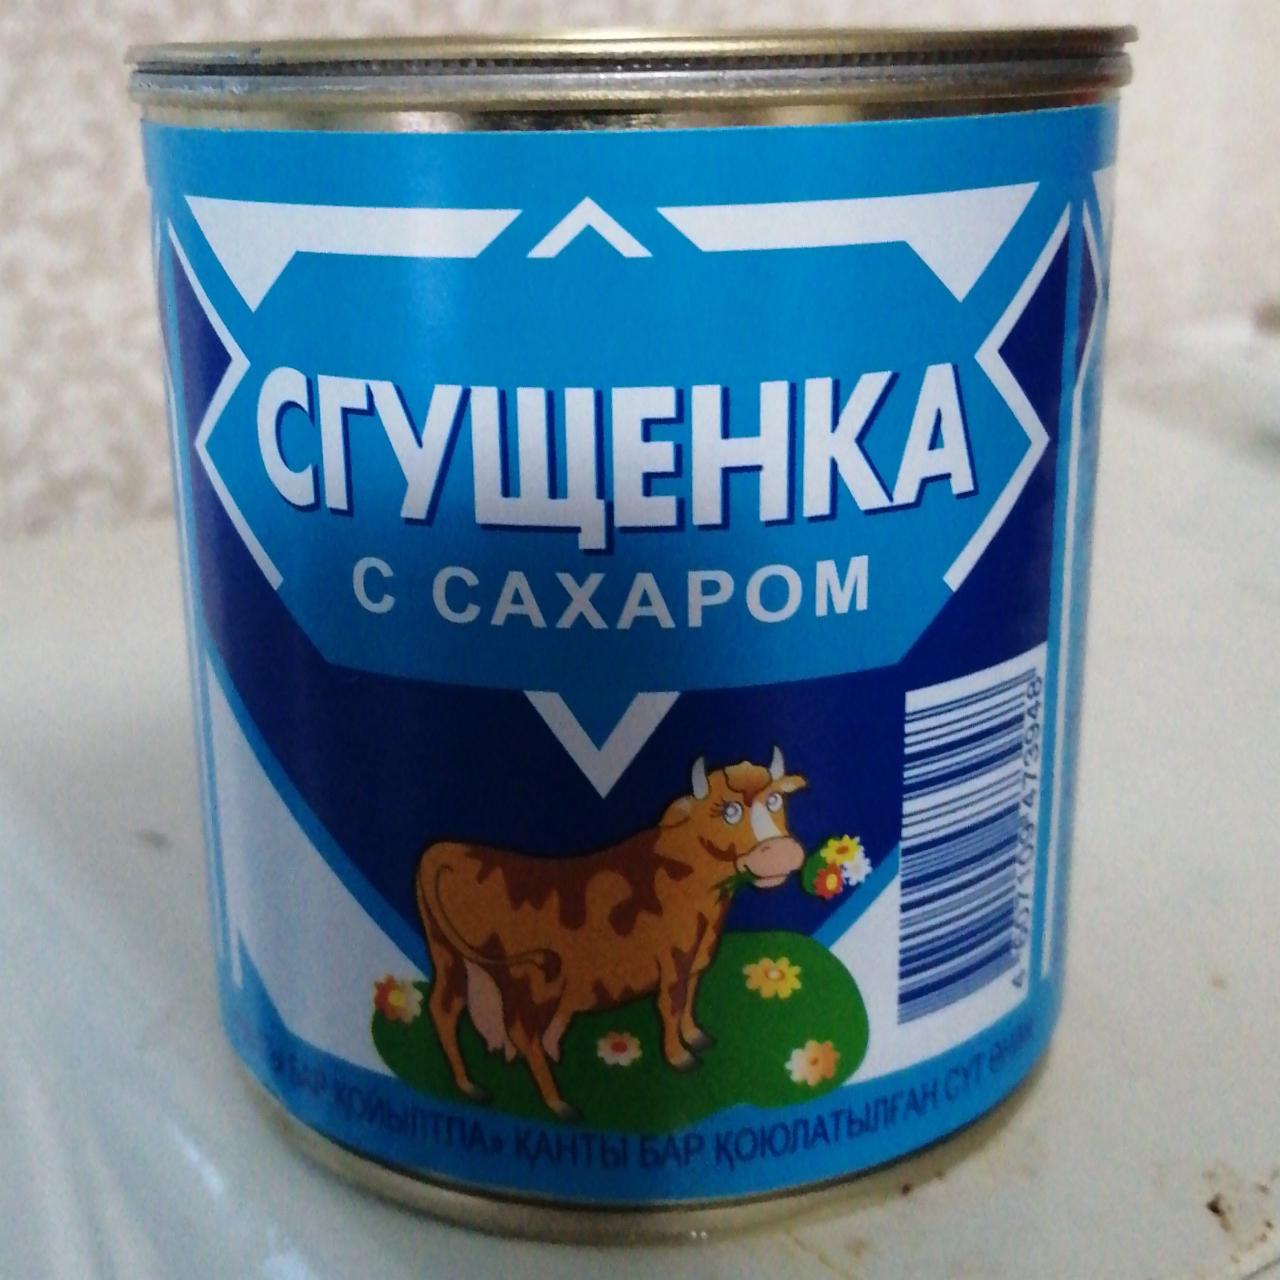 Фото - продукт молочный сгущенный с сахаром Сгущенка с сахаром Алексеевский молочноконсервный комбинат